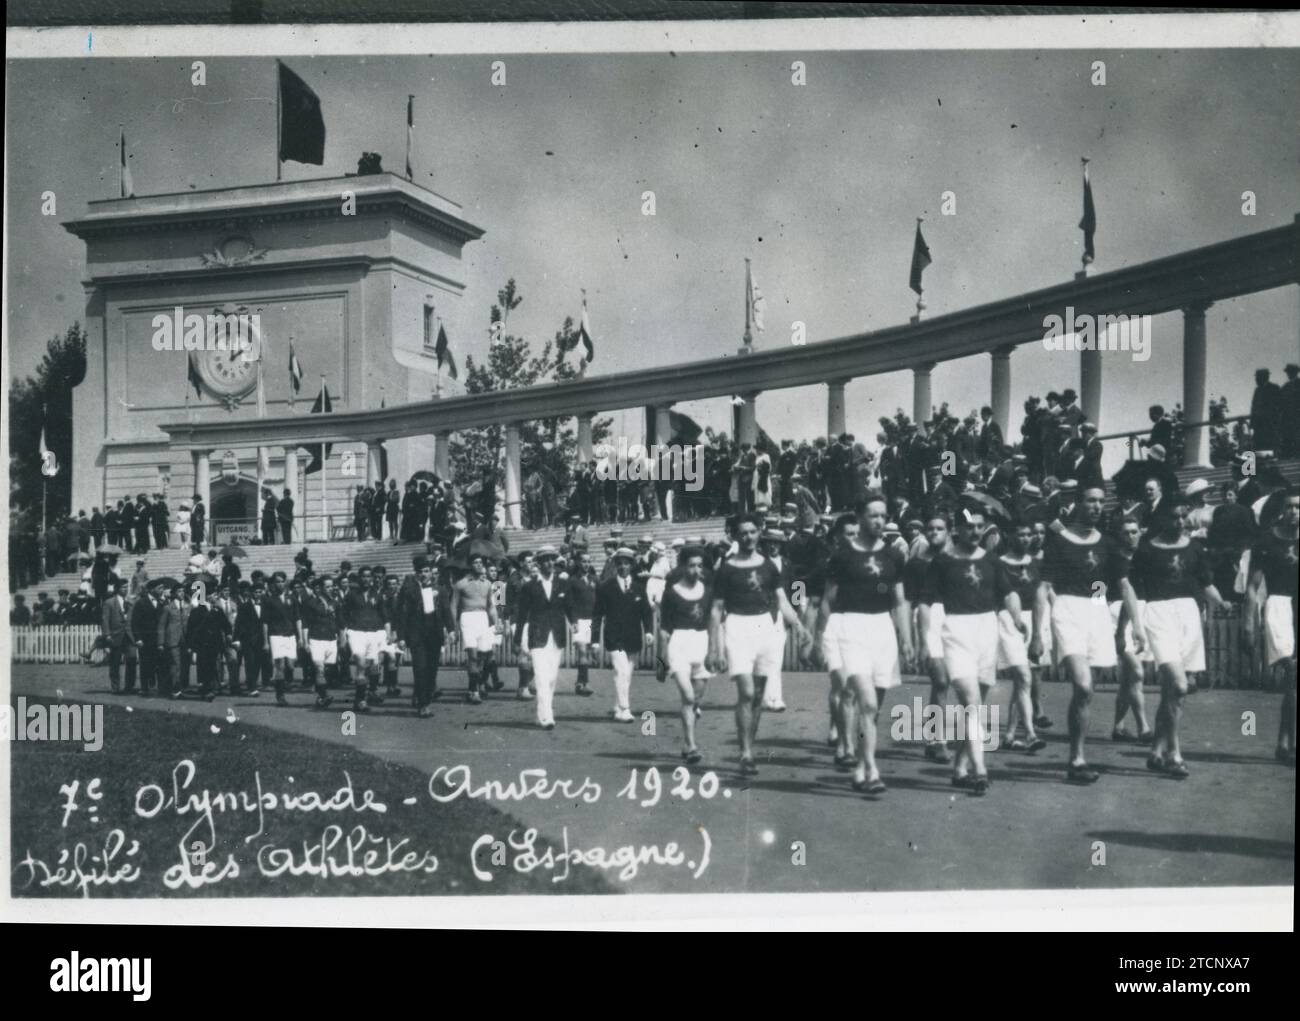 Anversa (Belgio), 08/20/1920. Giochi olimpici di Anversa. Sfilata della squadra spagnola, nel secondo gruppo è la squadra di calcio. Crediti: Album / Archivo ABC Foto Stock